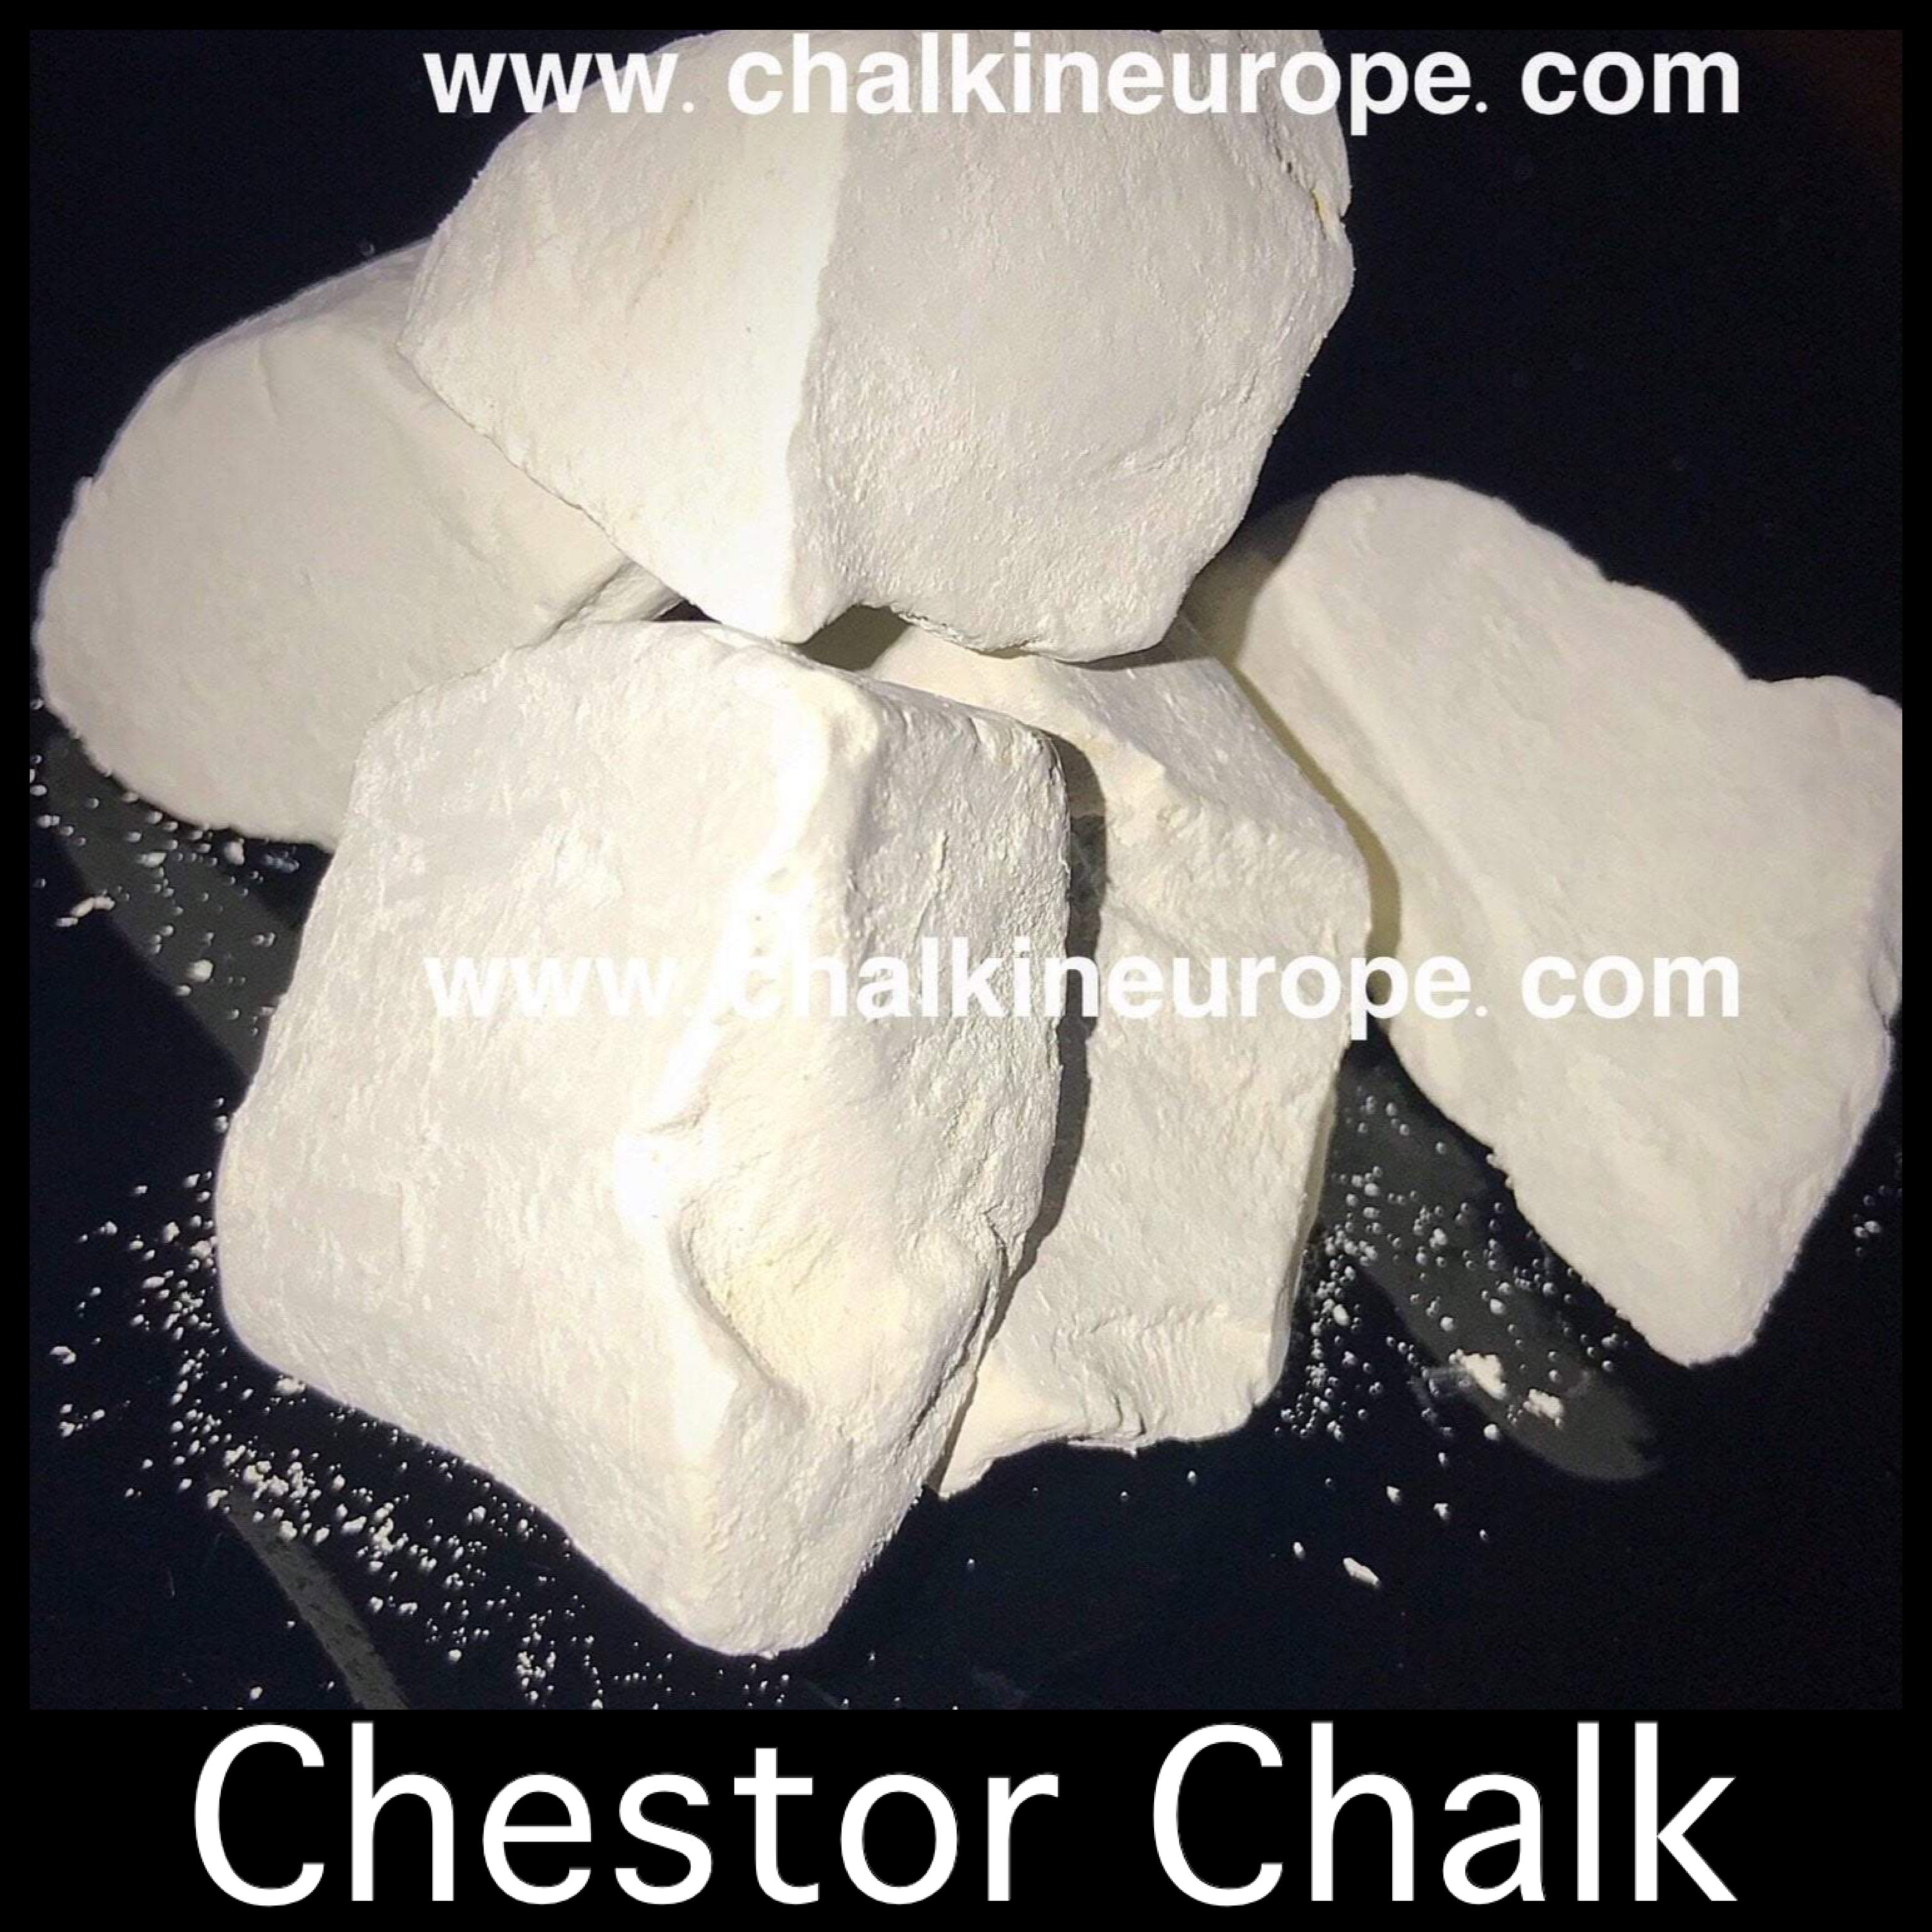 Craie Chestor - Chalkineurope